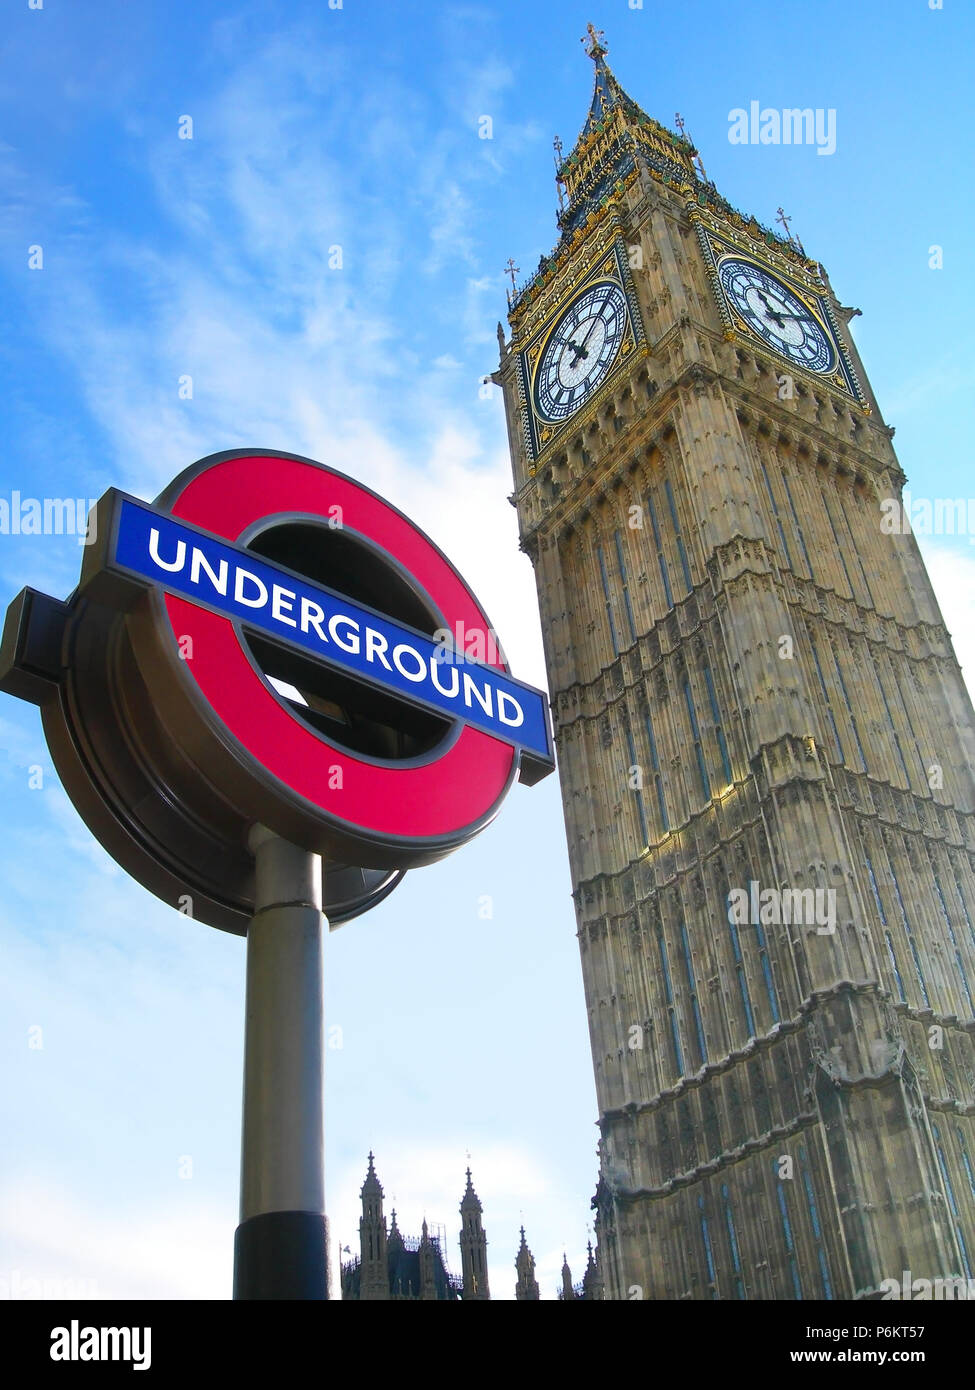 Simboli di Londra: Big Ben Clock Tower e segno della metropolitana Foto Stock